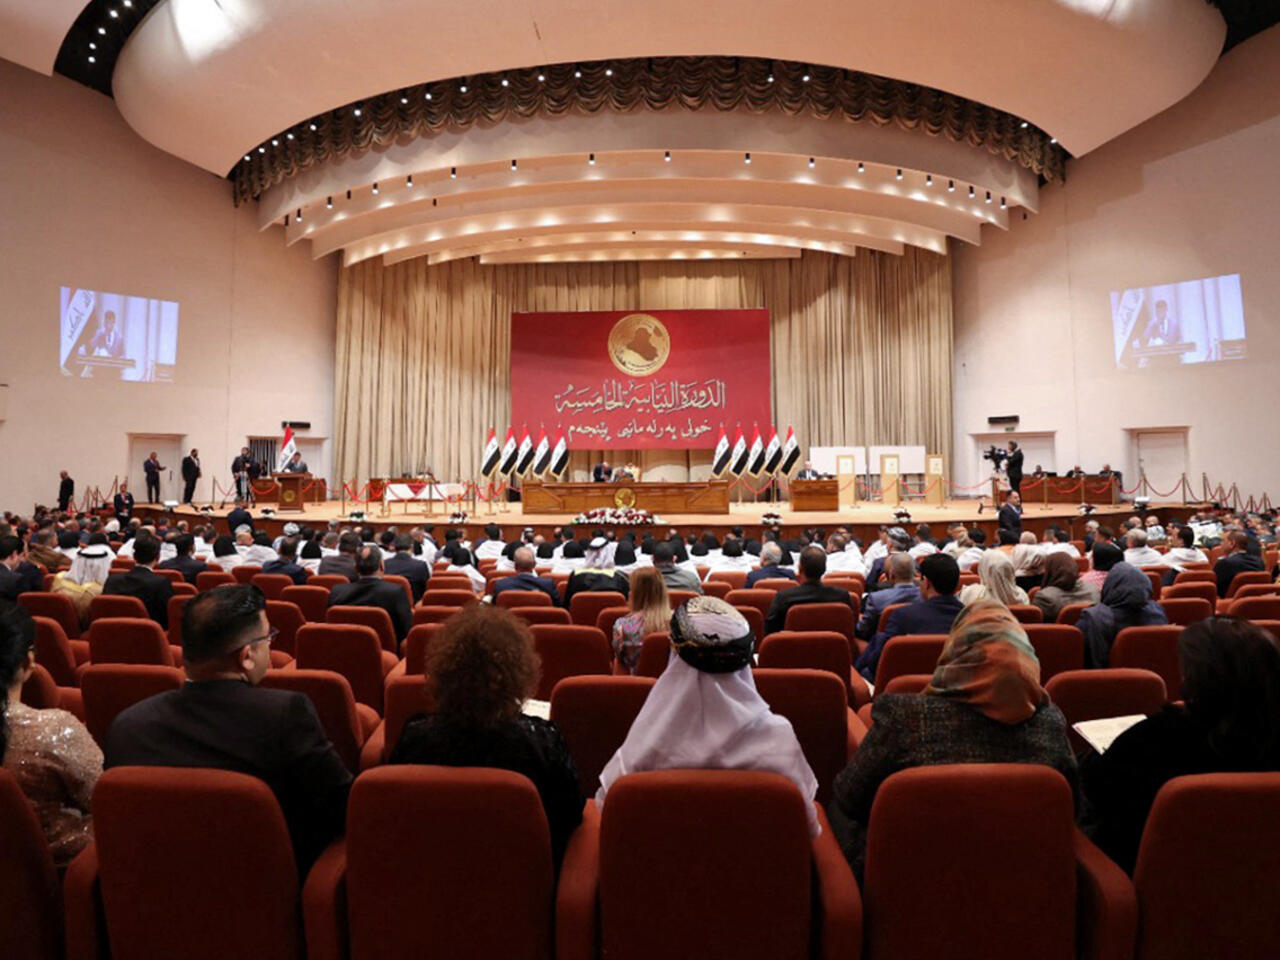 العراق.. اشتباك بالأيدي بين عدد من النواب قبل بدء استئناف جلسة البرلمان لانتخاب رئيس جديد (فيديو)